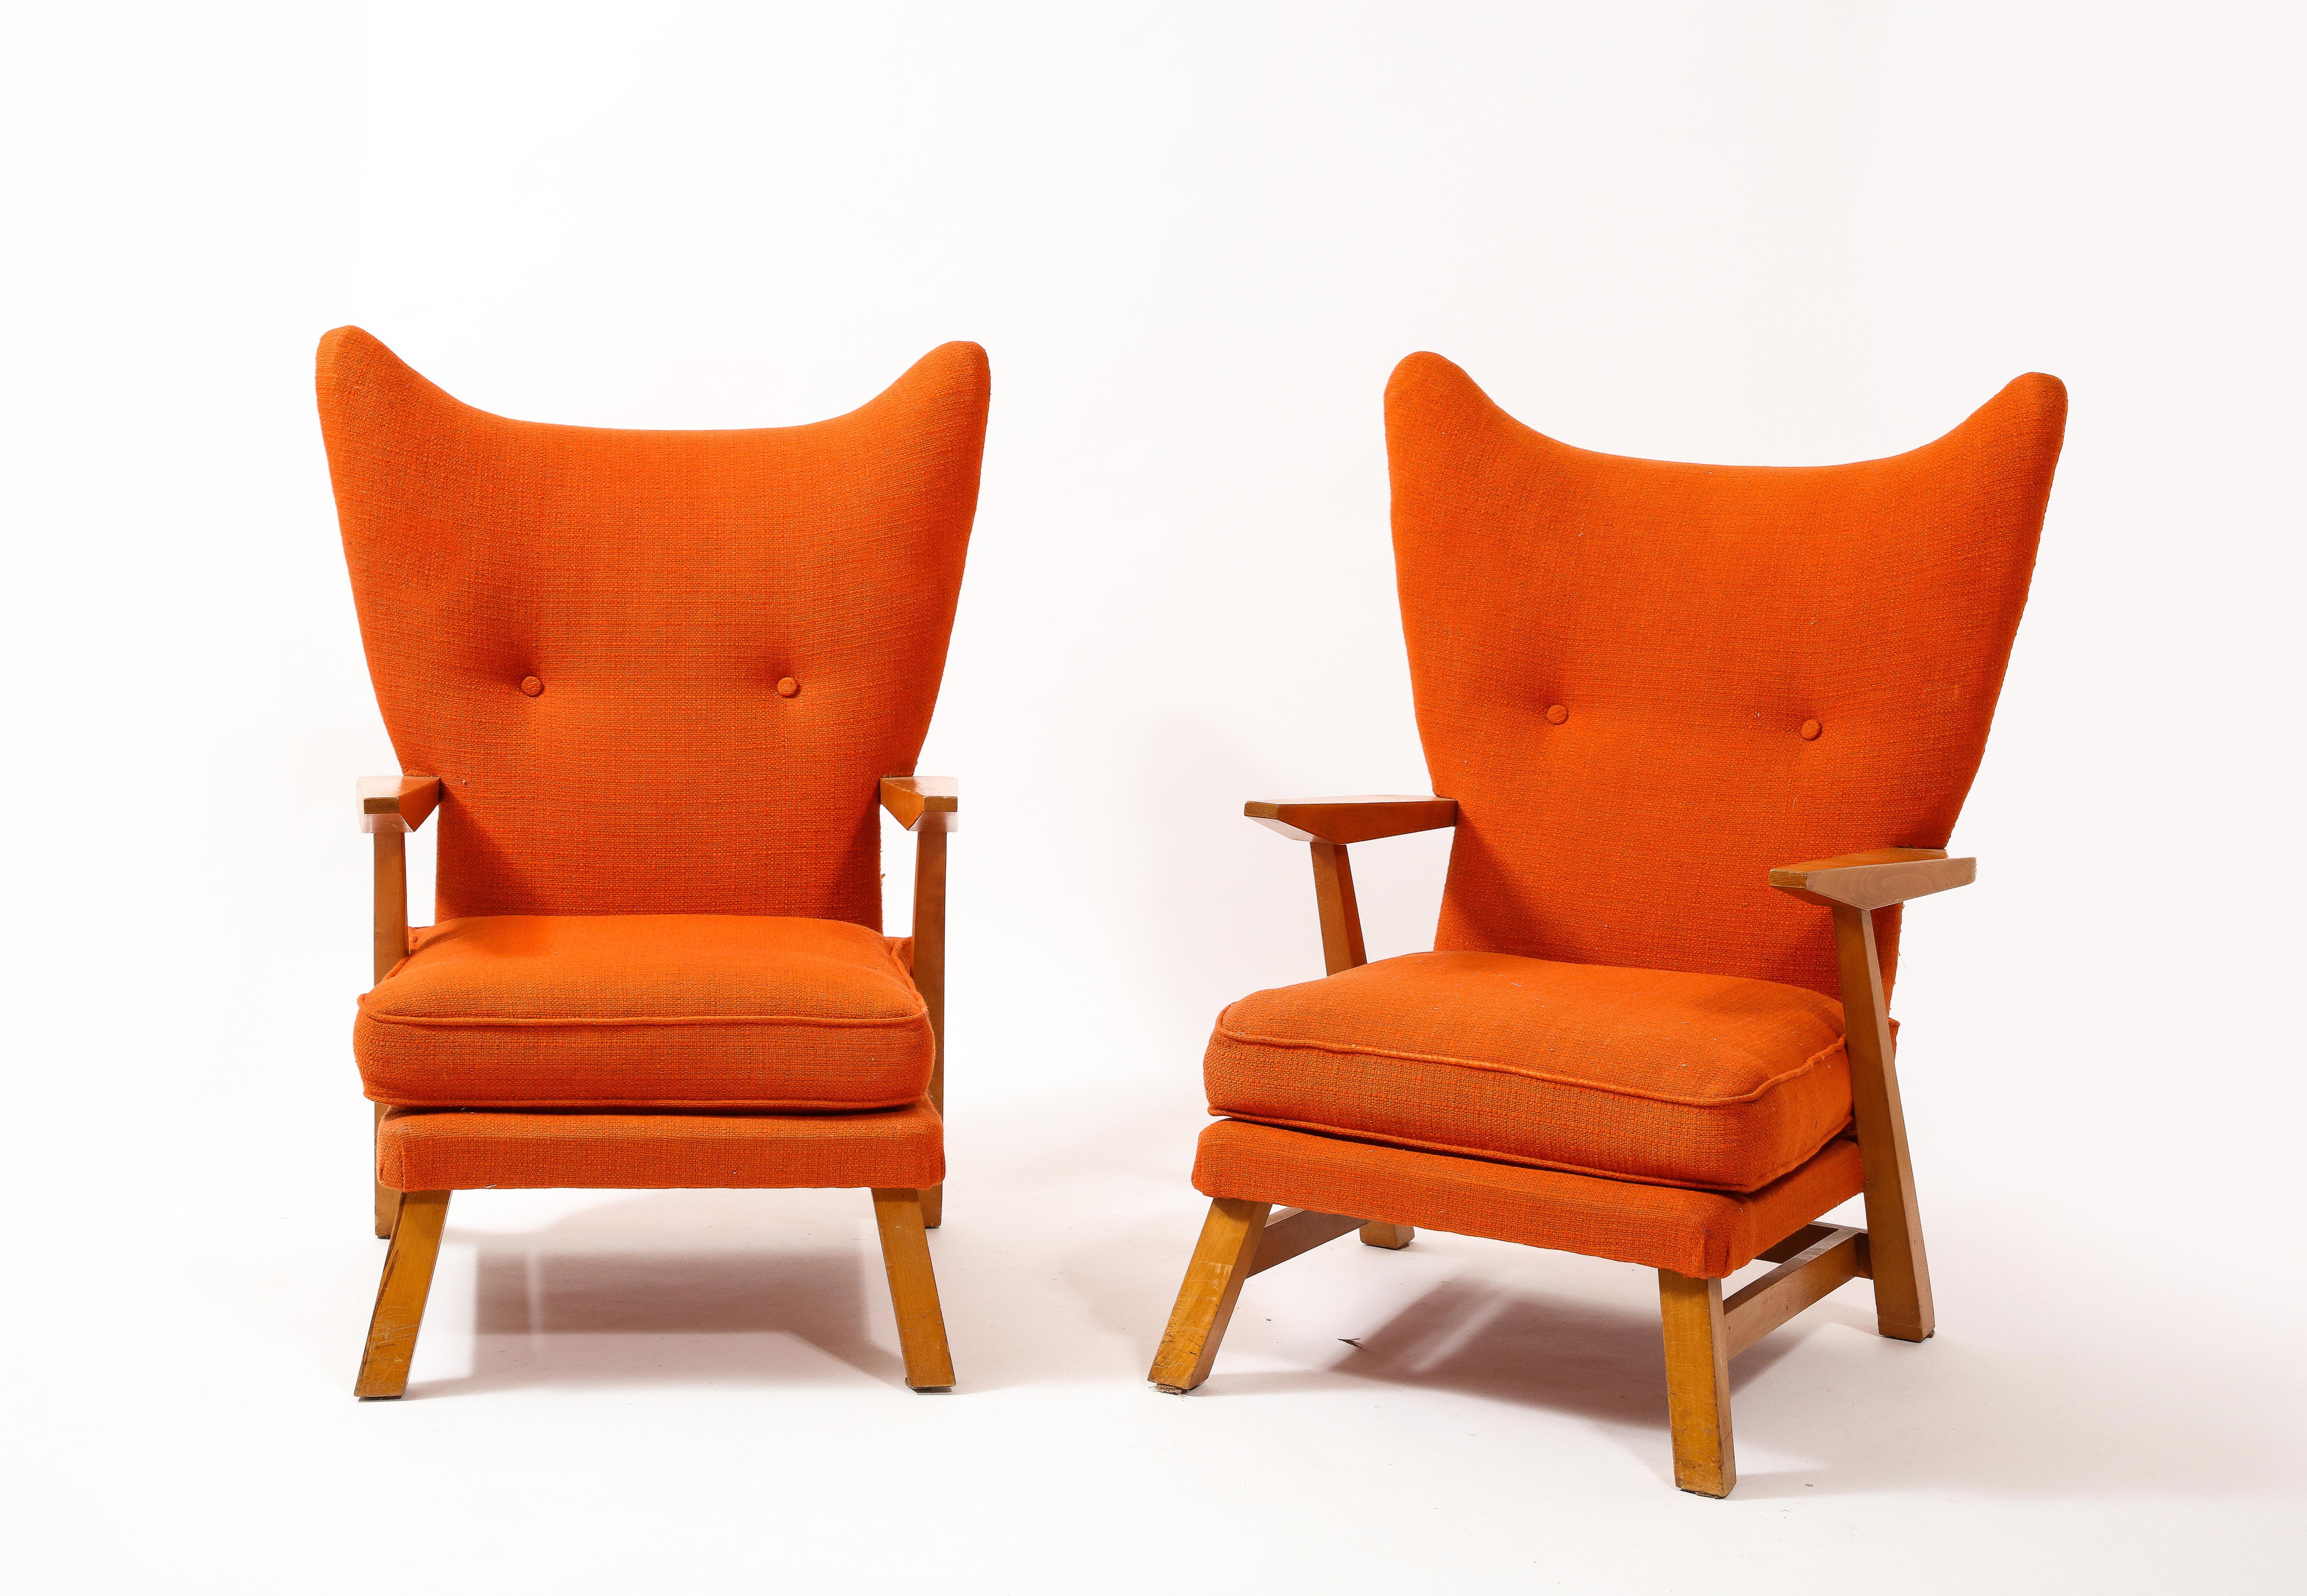 Grande paire de fauteuils à oreilles de Maison Regain en orme et tapisserie de laine d'origine. L'assiette est droite. Test d'assise encouragé. COM disponible sur demande.